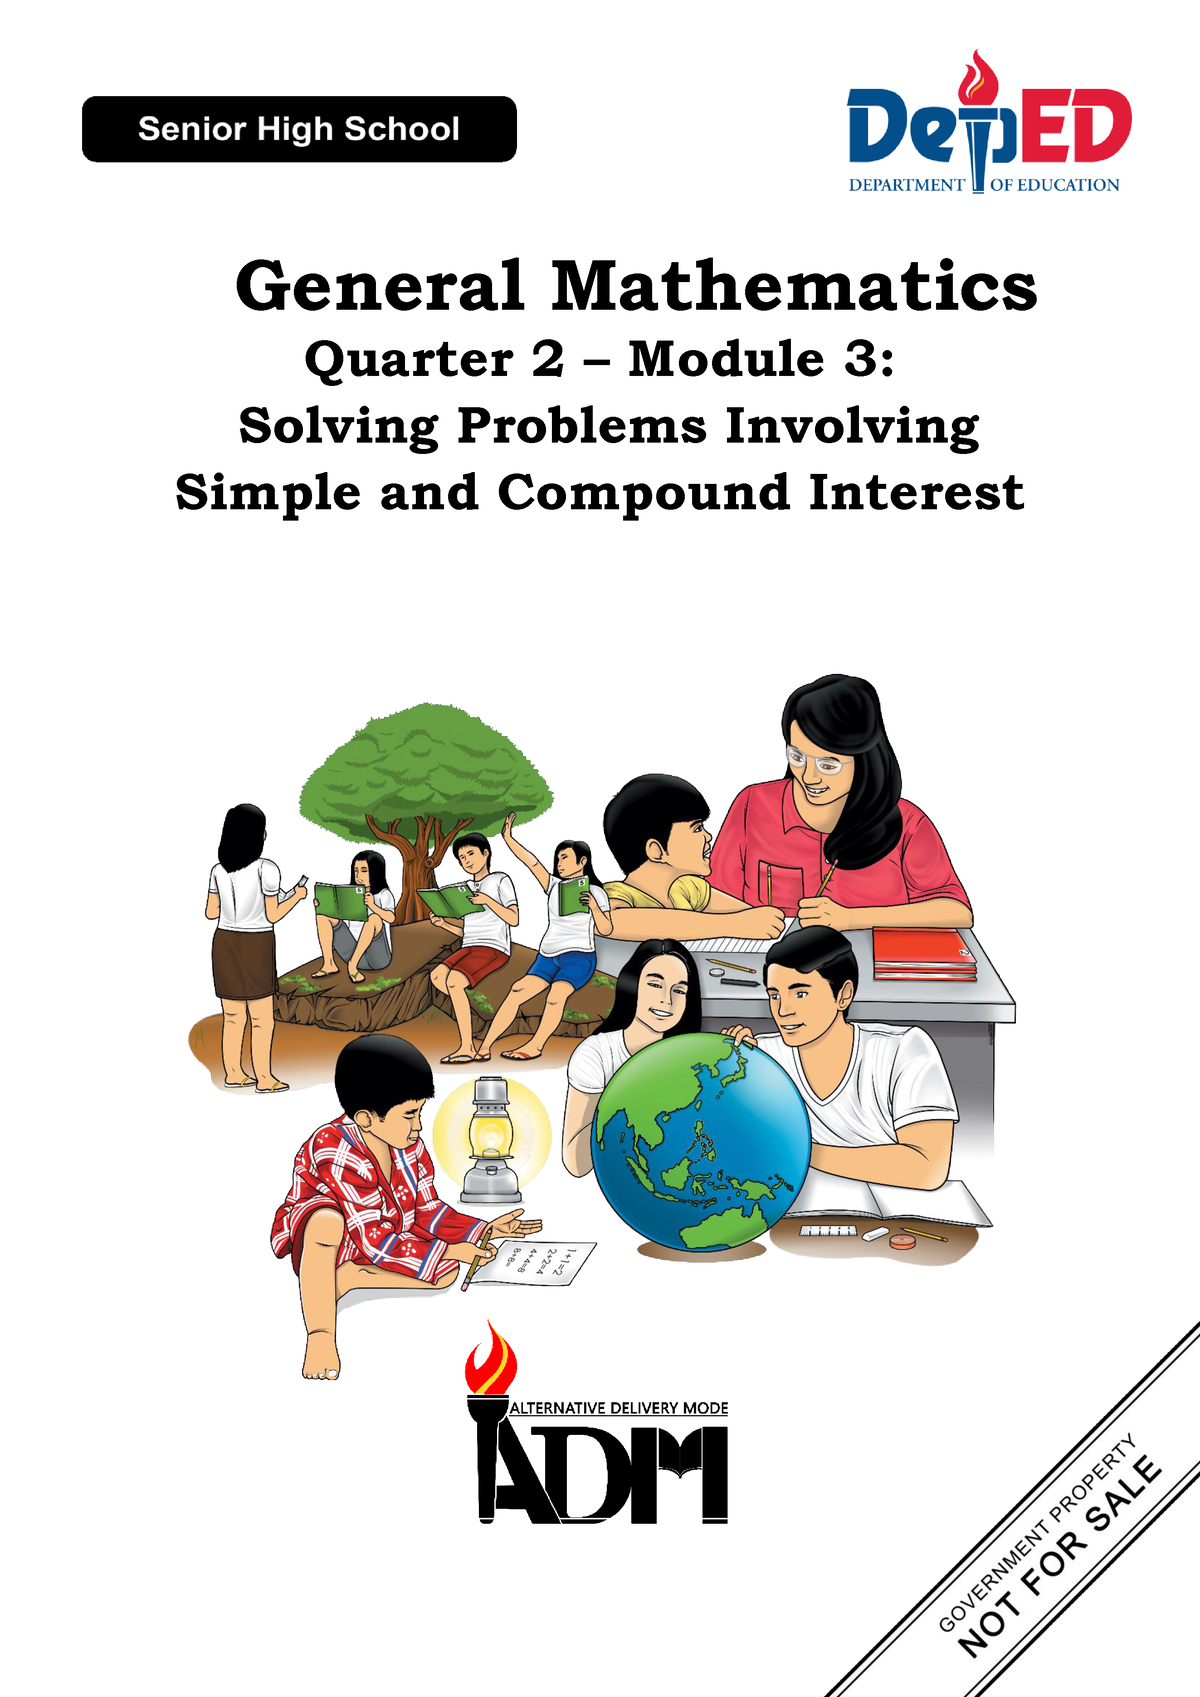 gen-math-11-q2-mod3-genmath-for-grade-11-senior-high-school-general